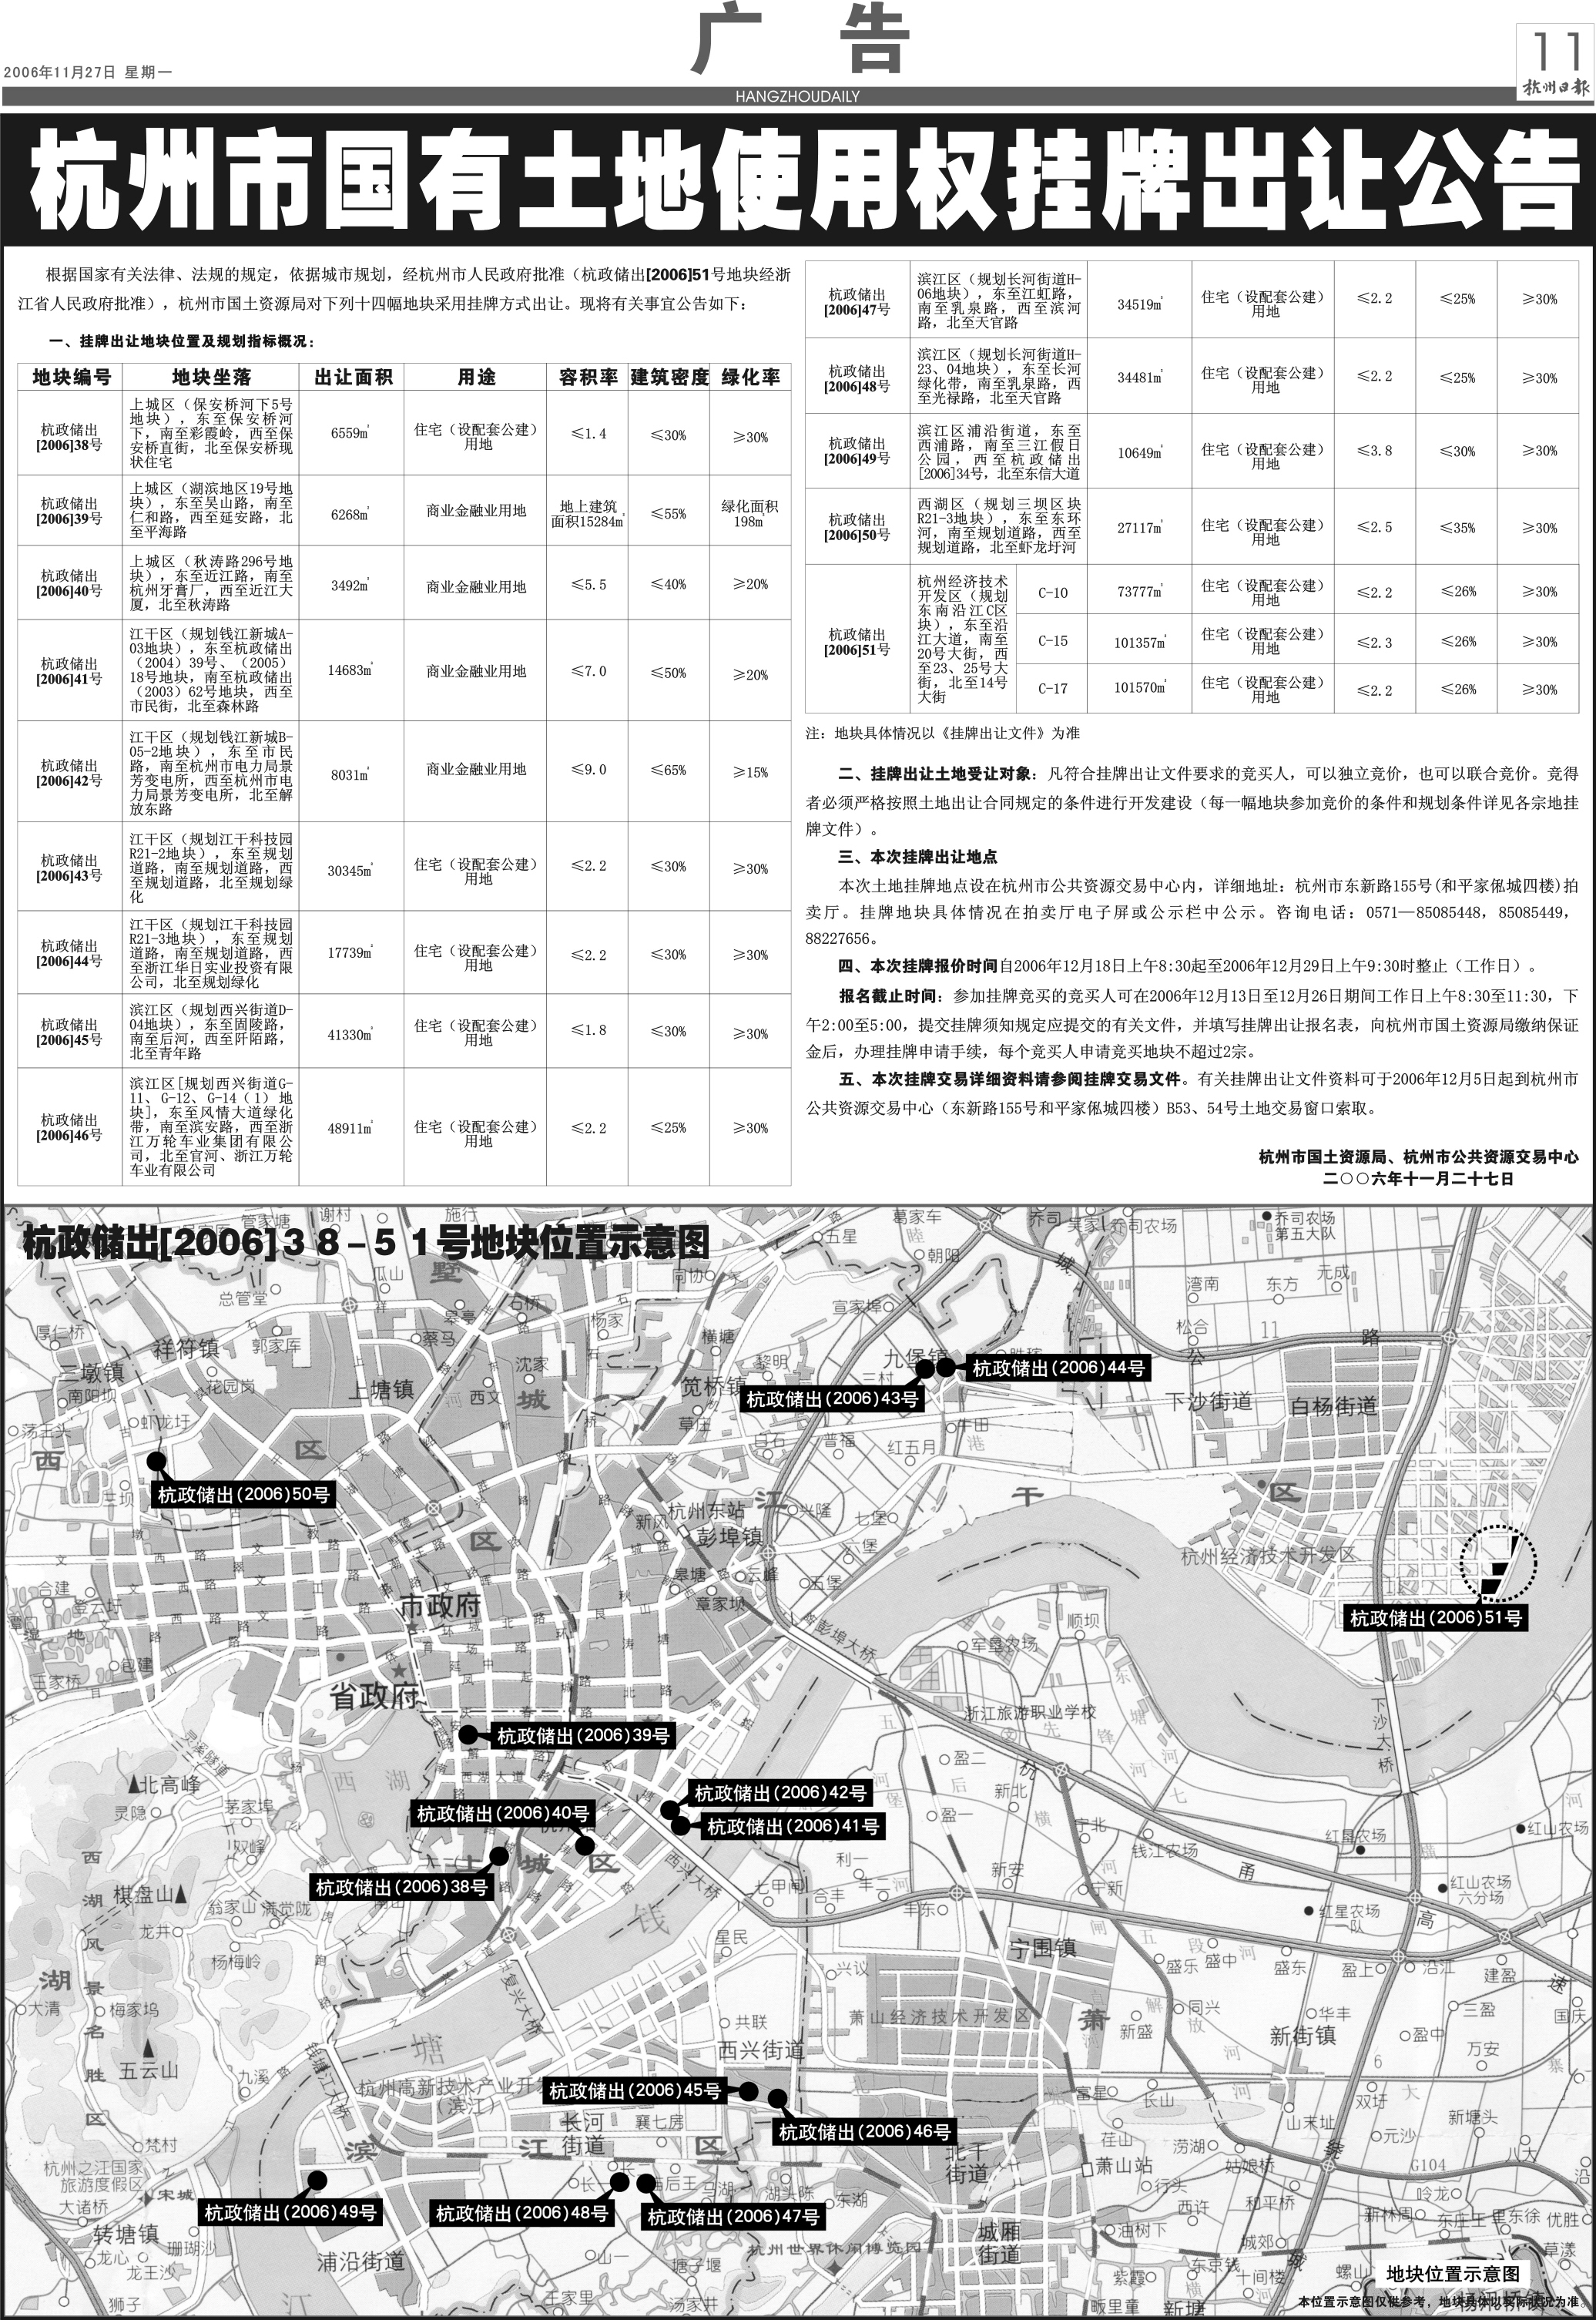 杭州市国有土地使用权挂牌出让公告(图)